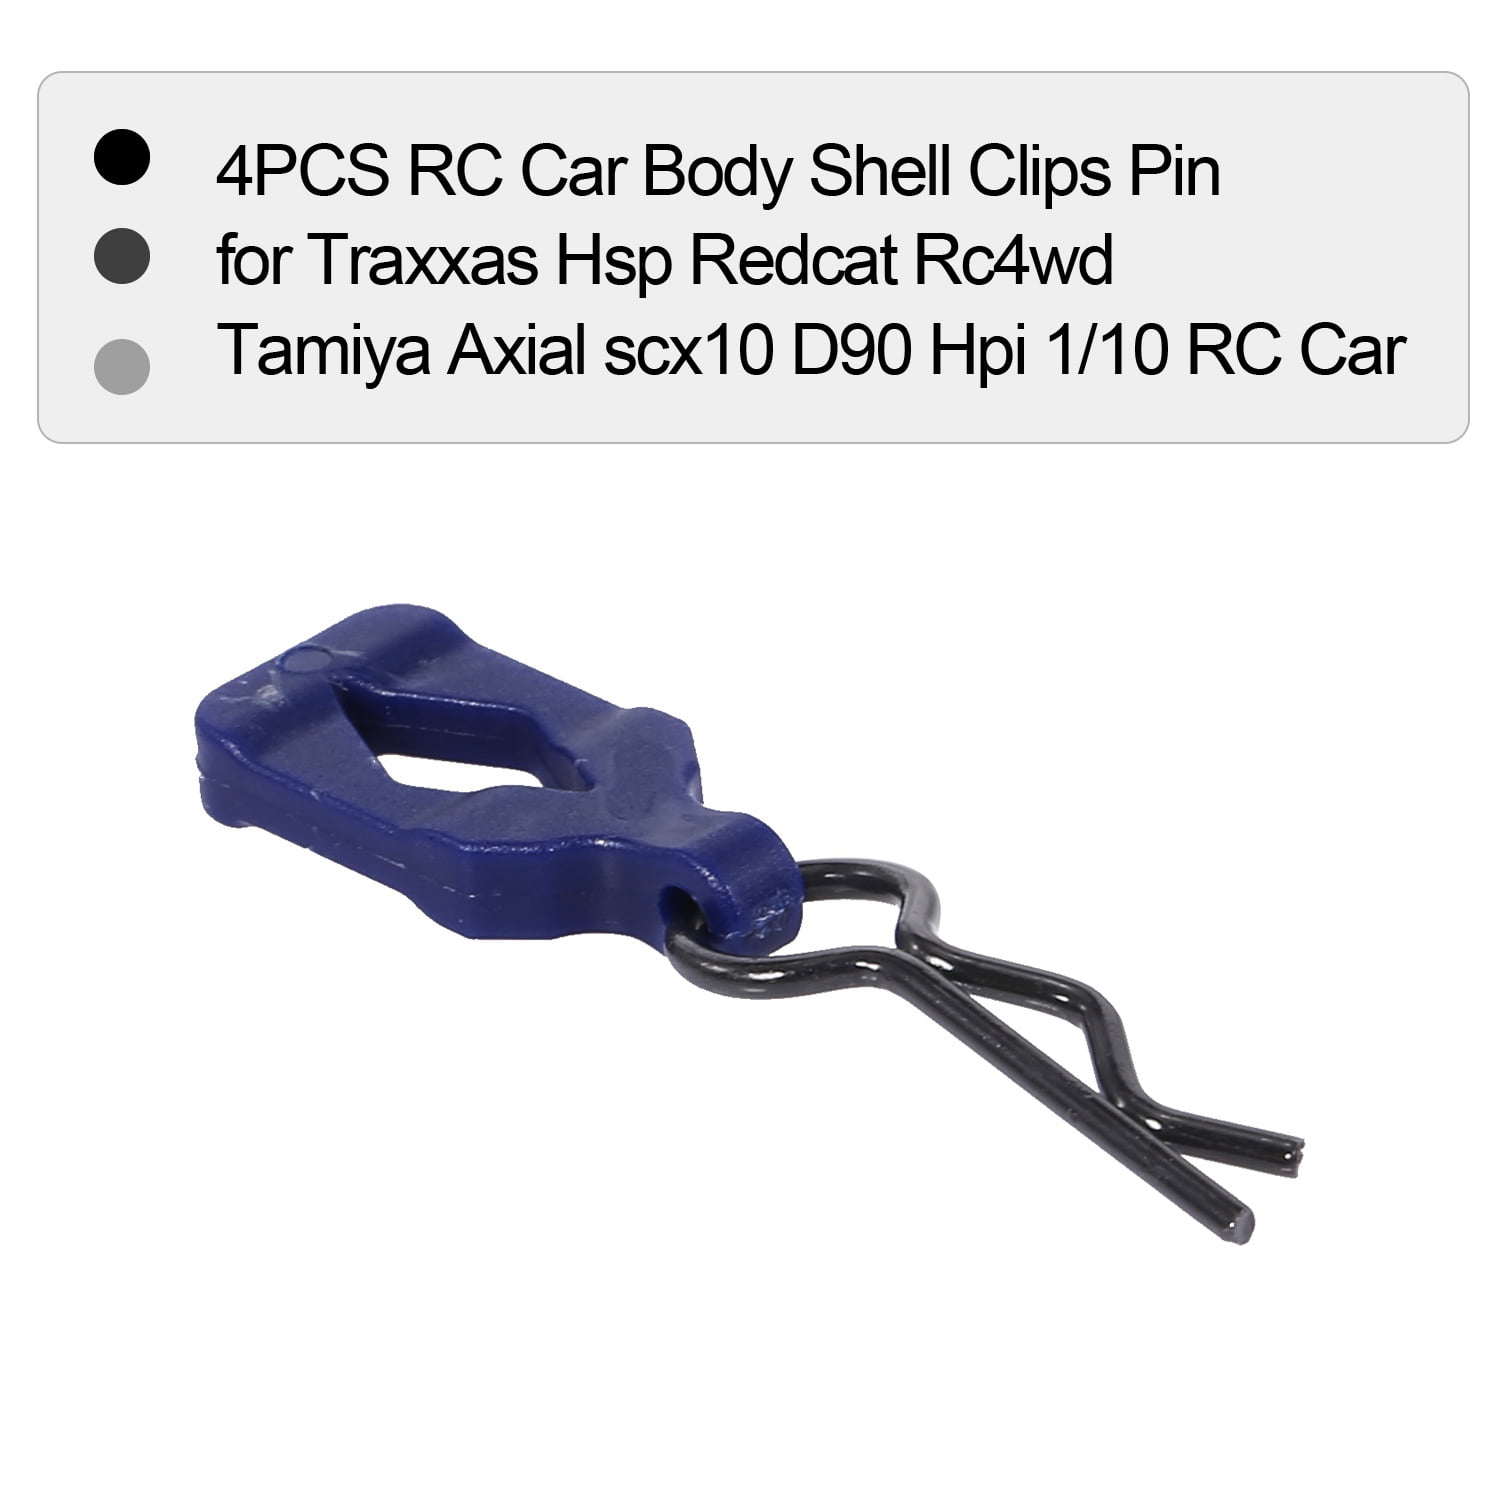 4pcs RC carrocería shell clips pin de Traxxas HSP Redcat rc4wd Tamiya f6k2